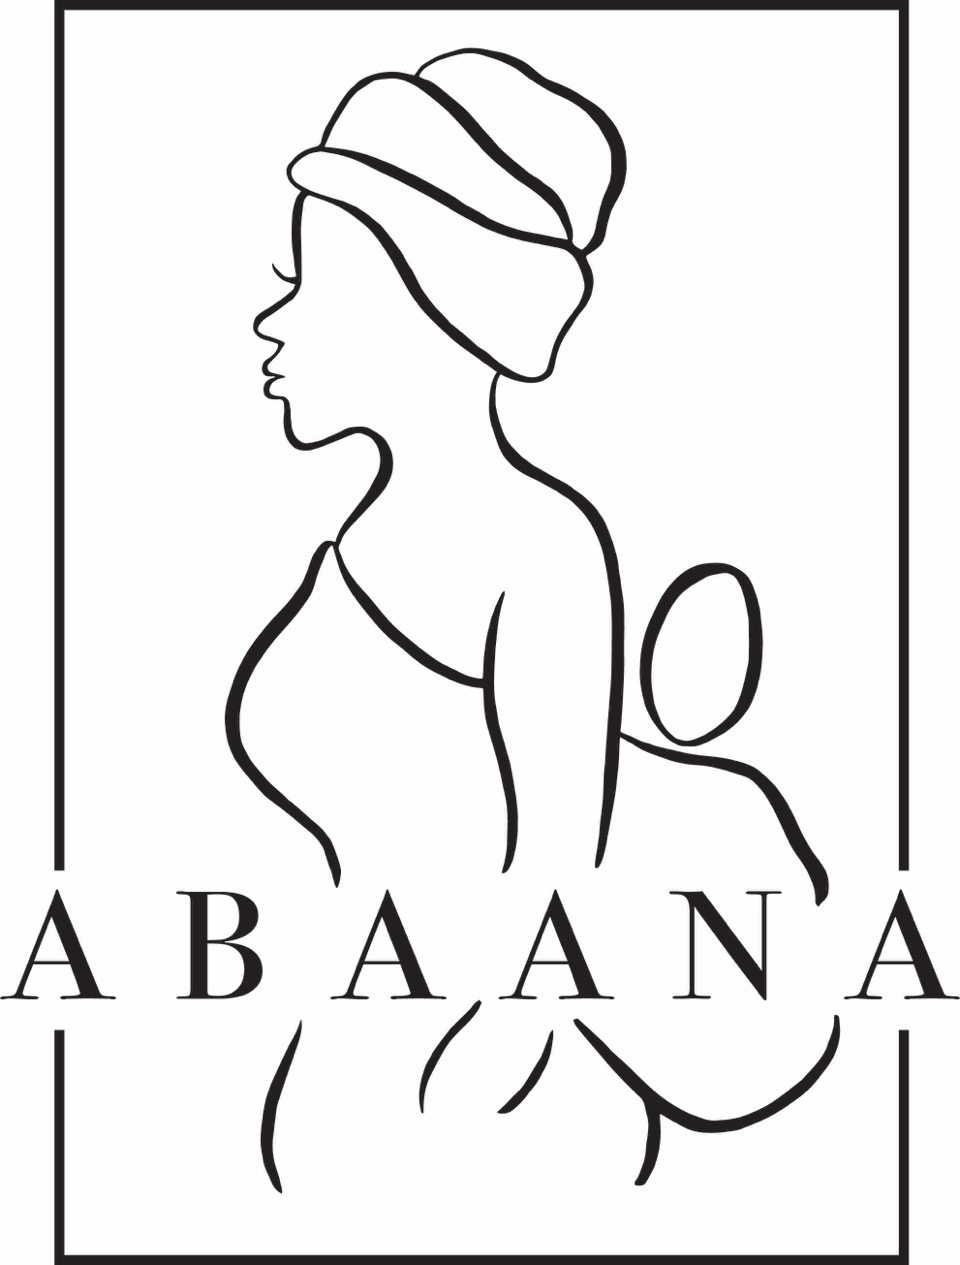 Abaana